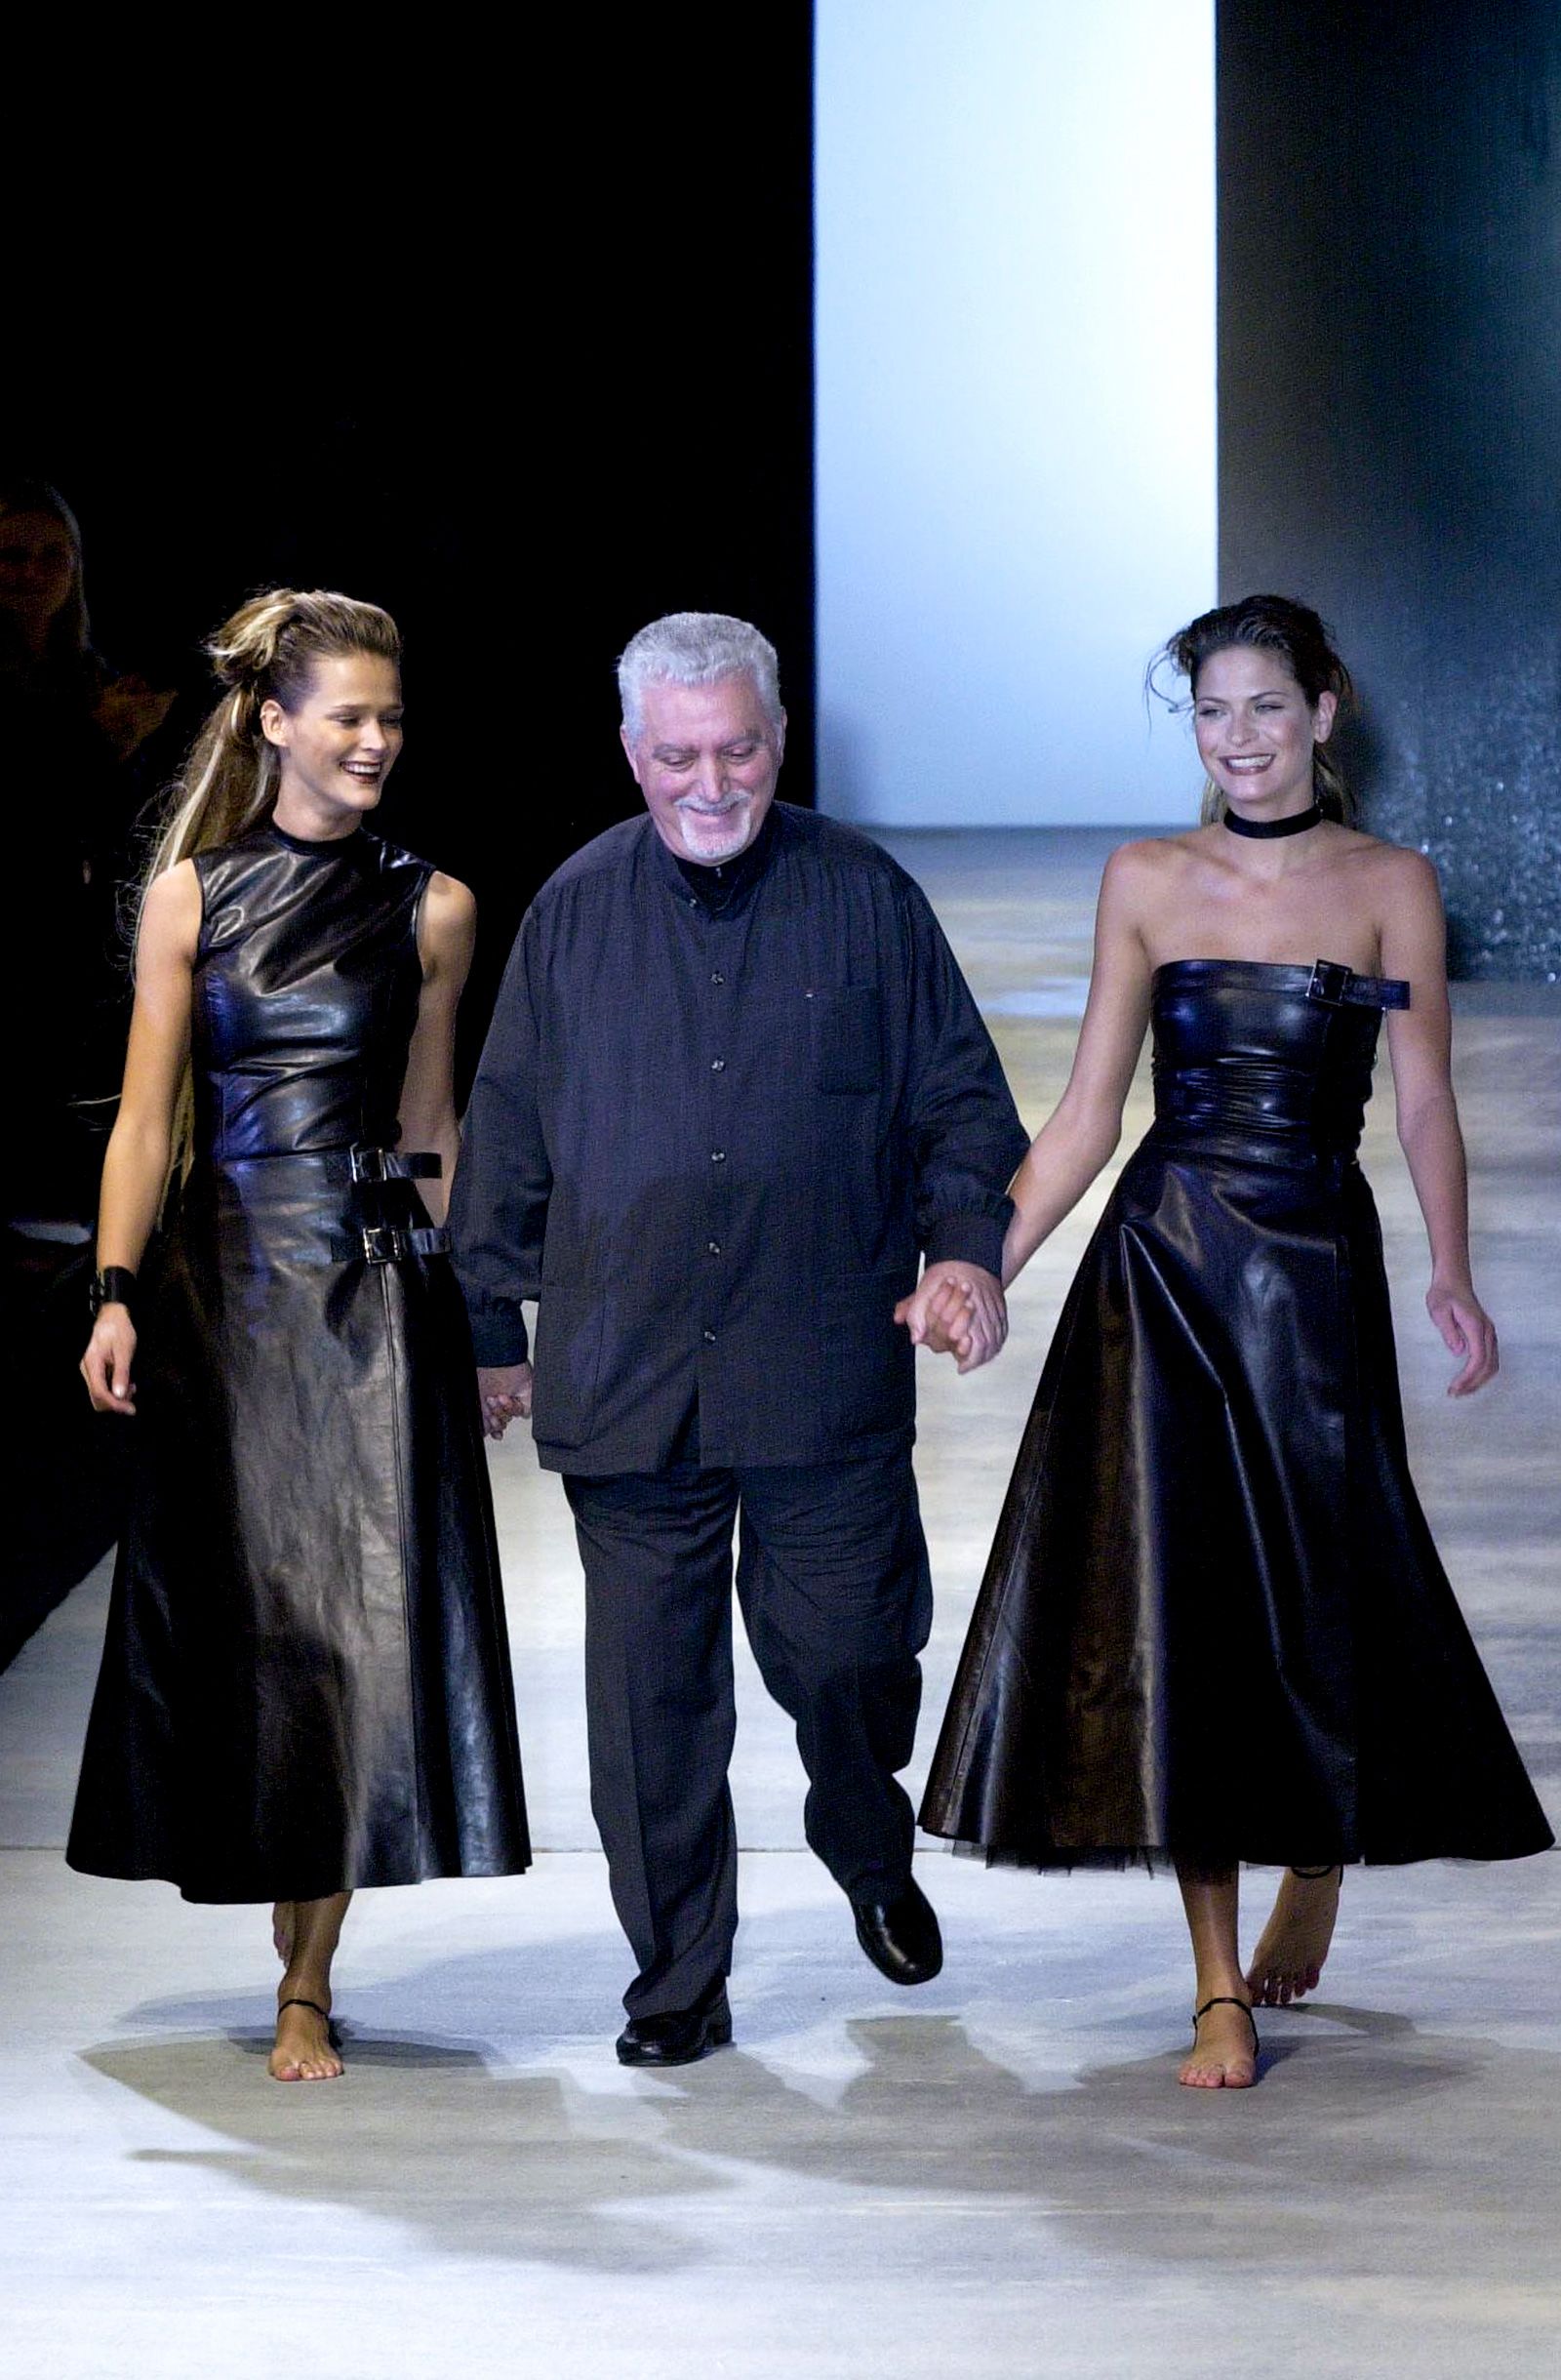 Spanish fashion designer Paco Rabanne has died